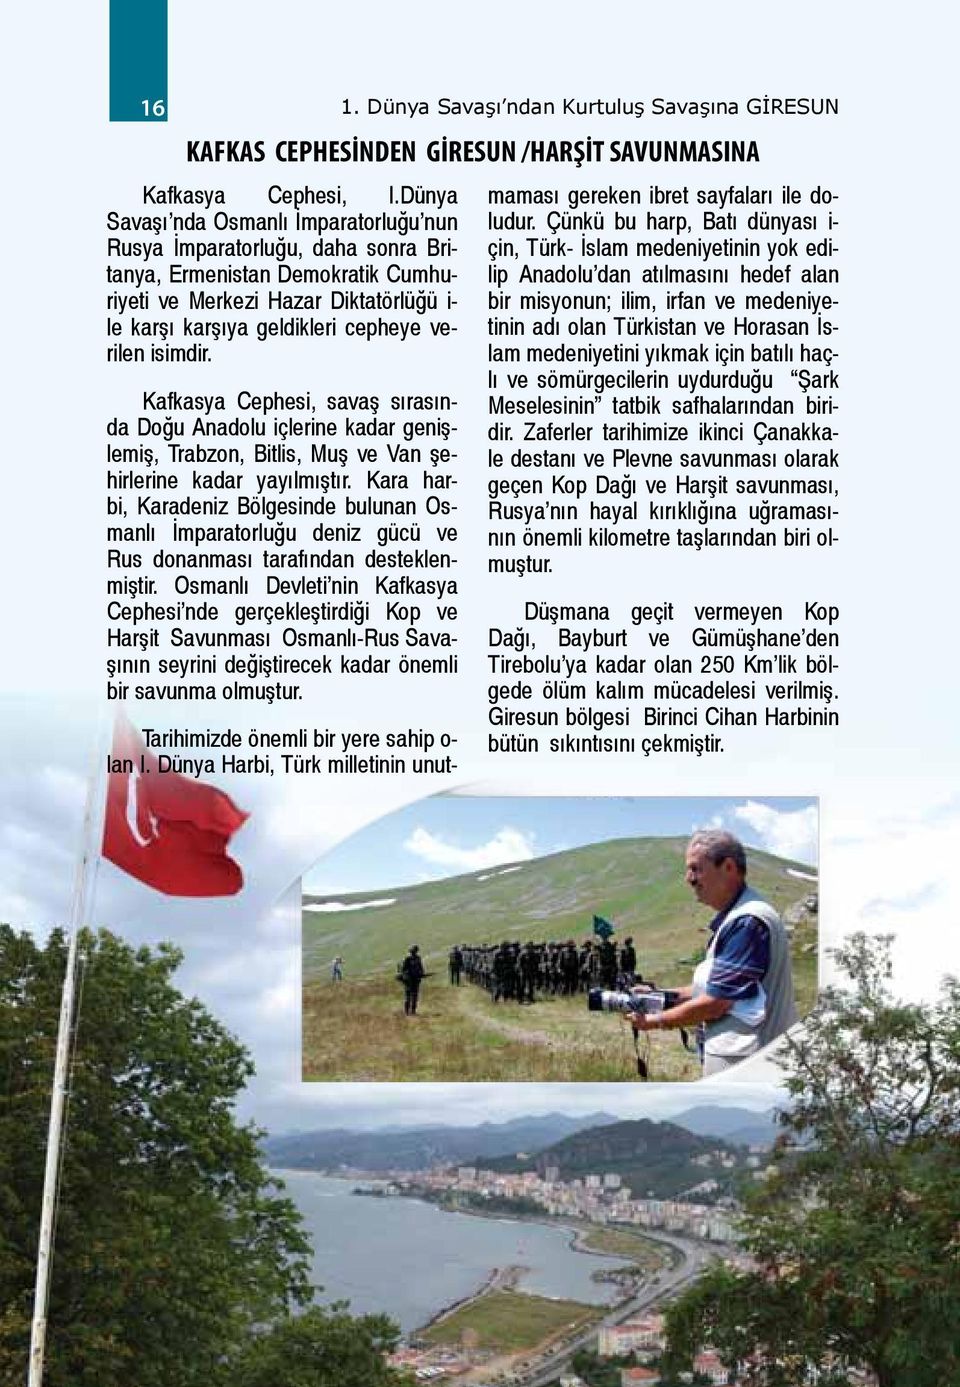 isimdir. Kafkasya Cephesi, savaş sırasında Doğu Anadolu içlerine kadar genişlemiş, Trabzon, Bitlis, Muş ve Van şehirlerine kadar yayılmıştır.